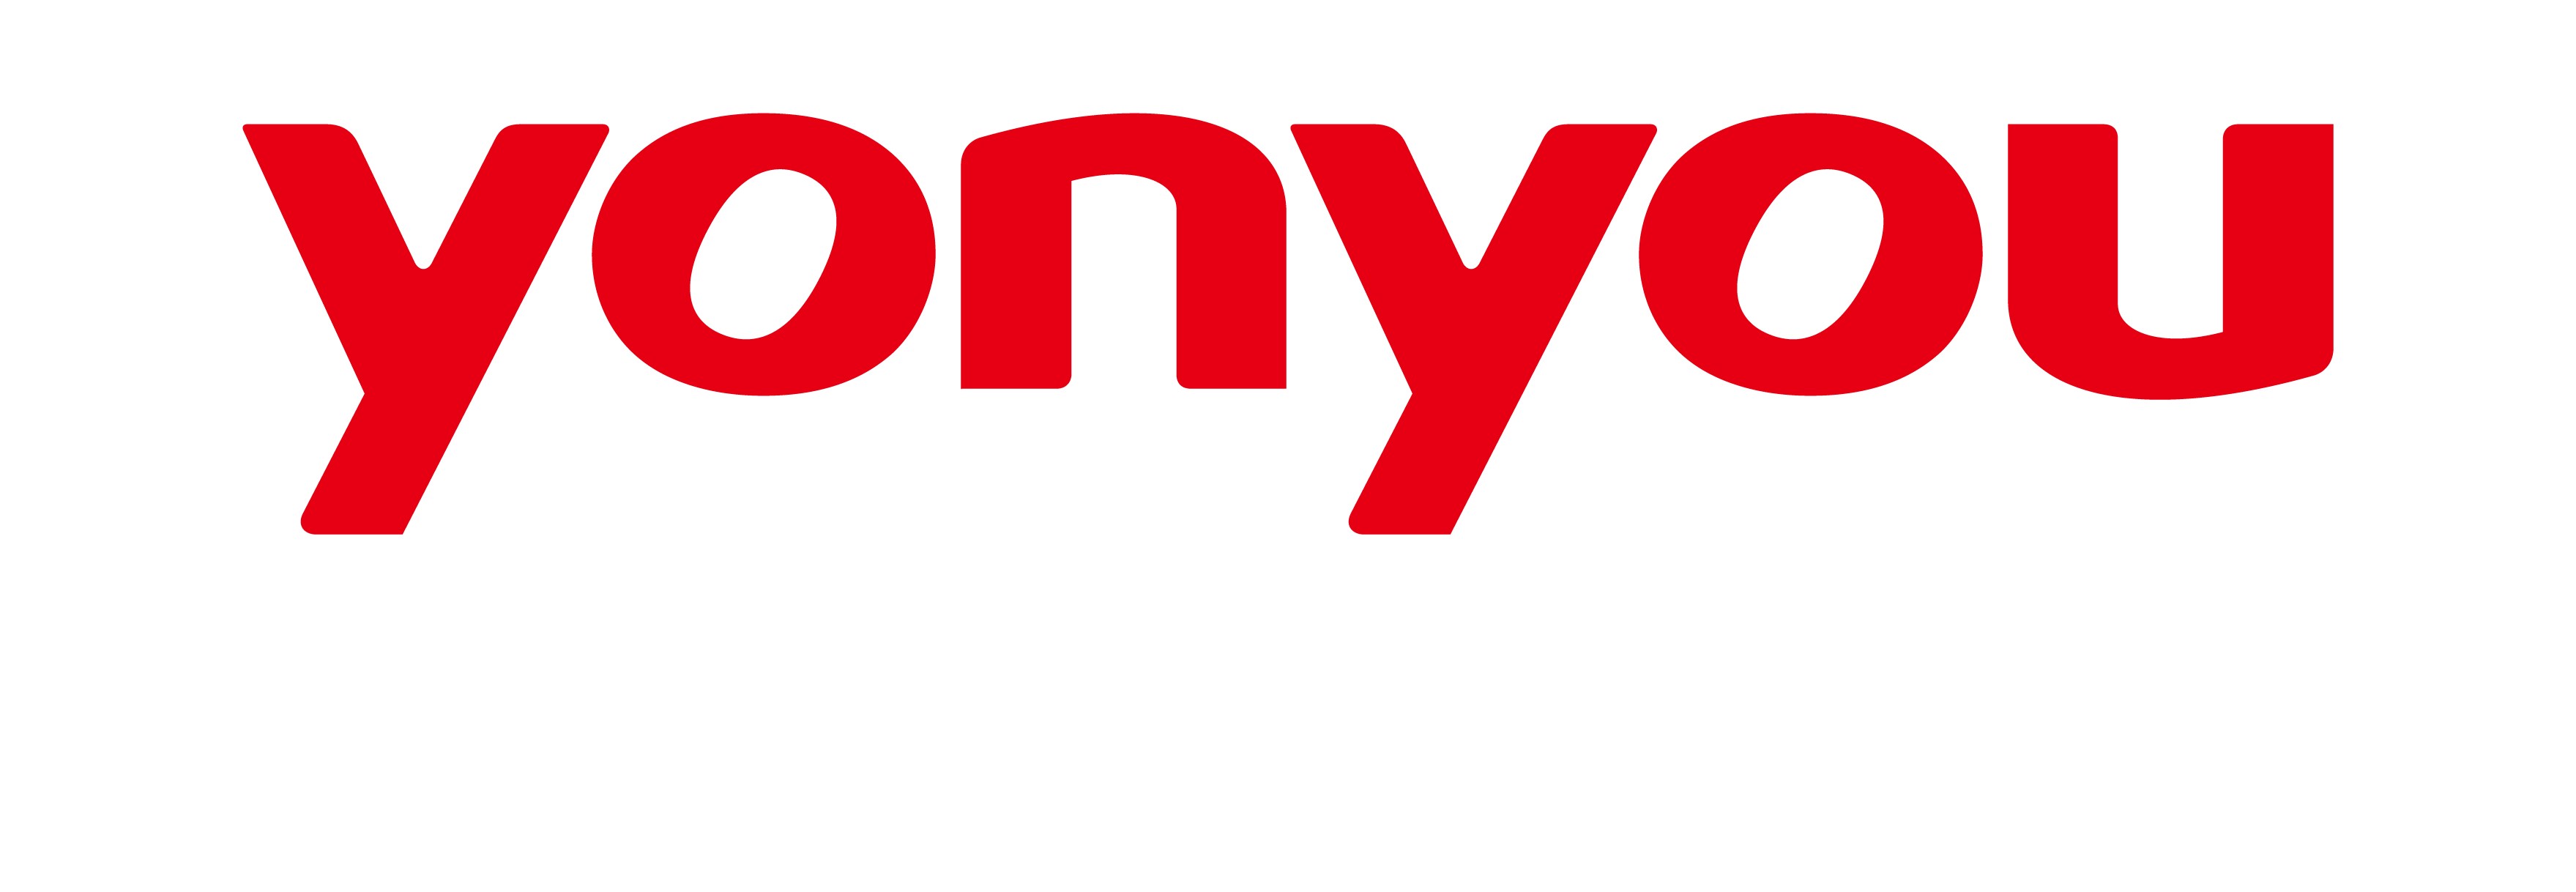 Yonyou Network Technology - EN logo